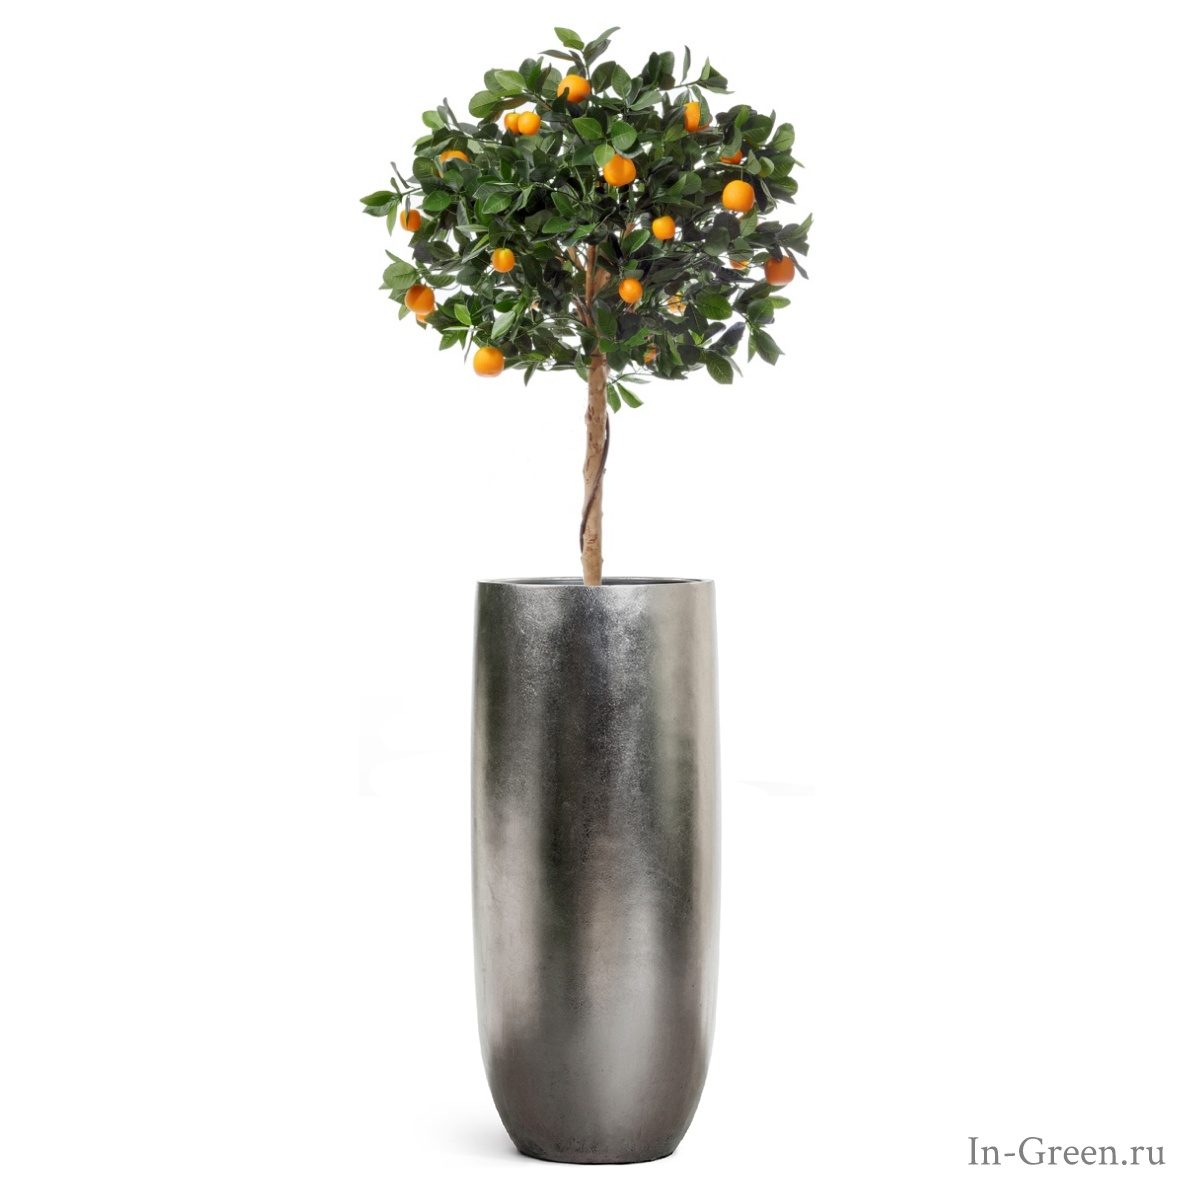 Мандариновое дерево Голден Оранж искусственное с плодами на штамбе в кашпо стальное серебро | 195 см